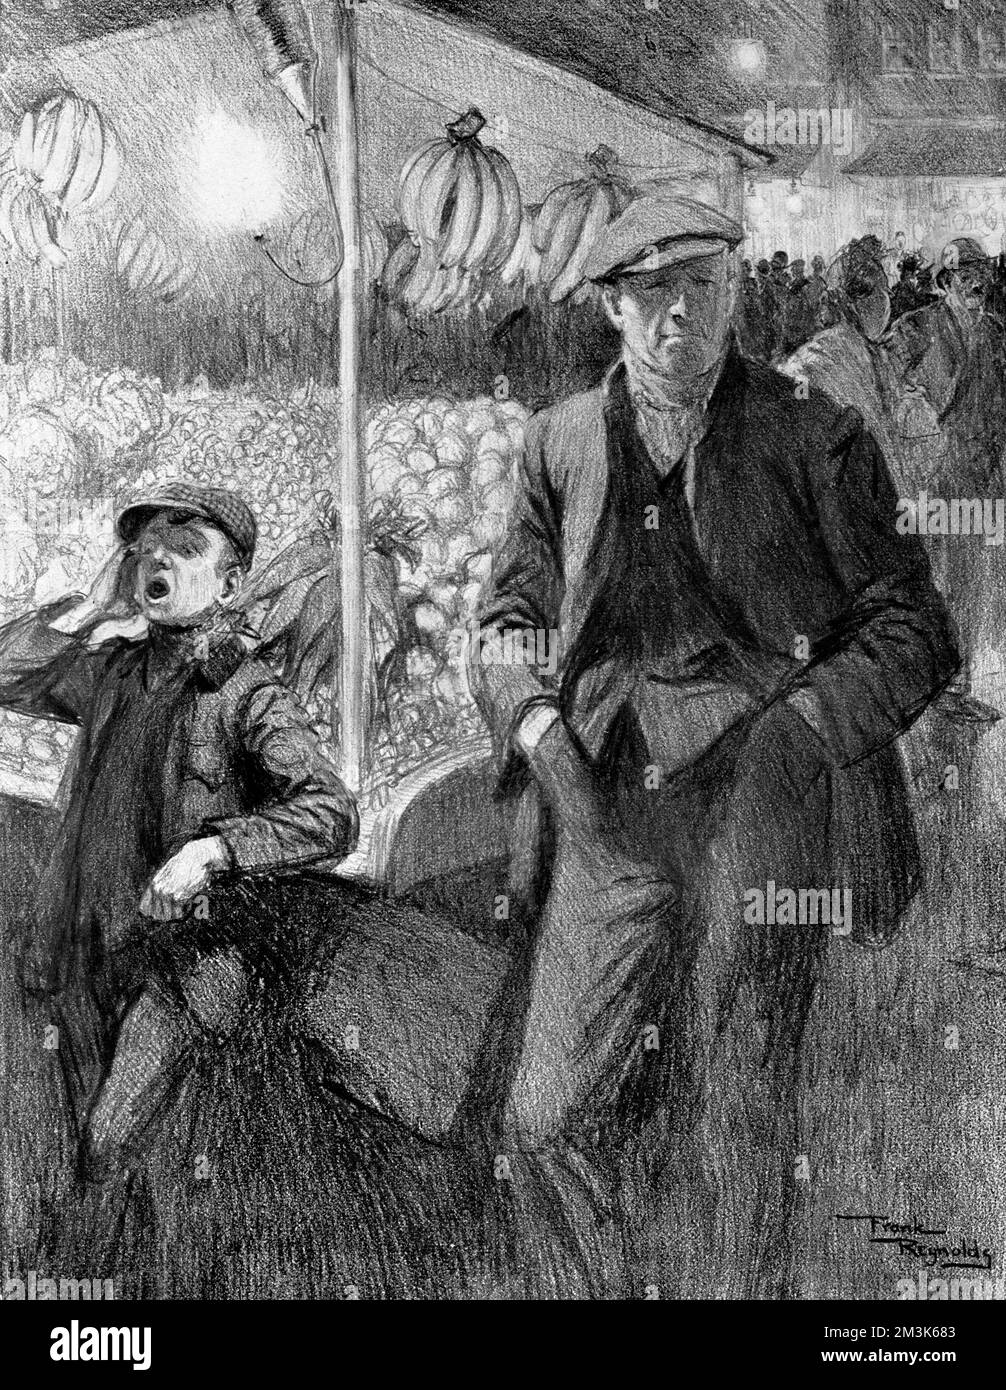 Londres costermonger et son 'garçon' à leur marché 'fruit et Veg' stall, 1910. Cette image a été produite par Frank Reynolds dans le cadre d'une série intitulée: 'Types anglais particulier'. Date: 1910 Banque D'Images